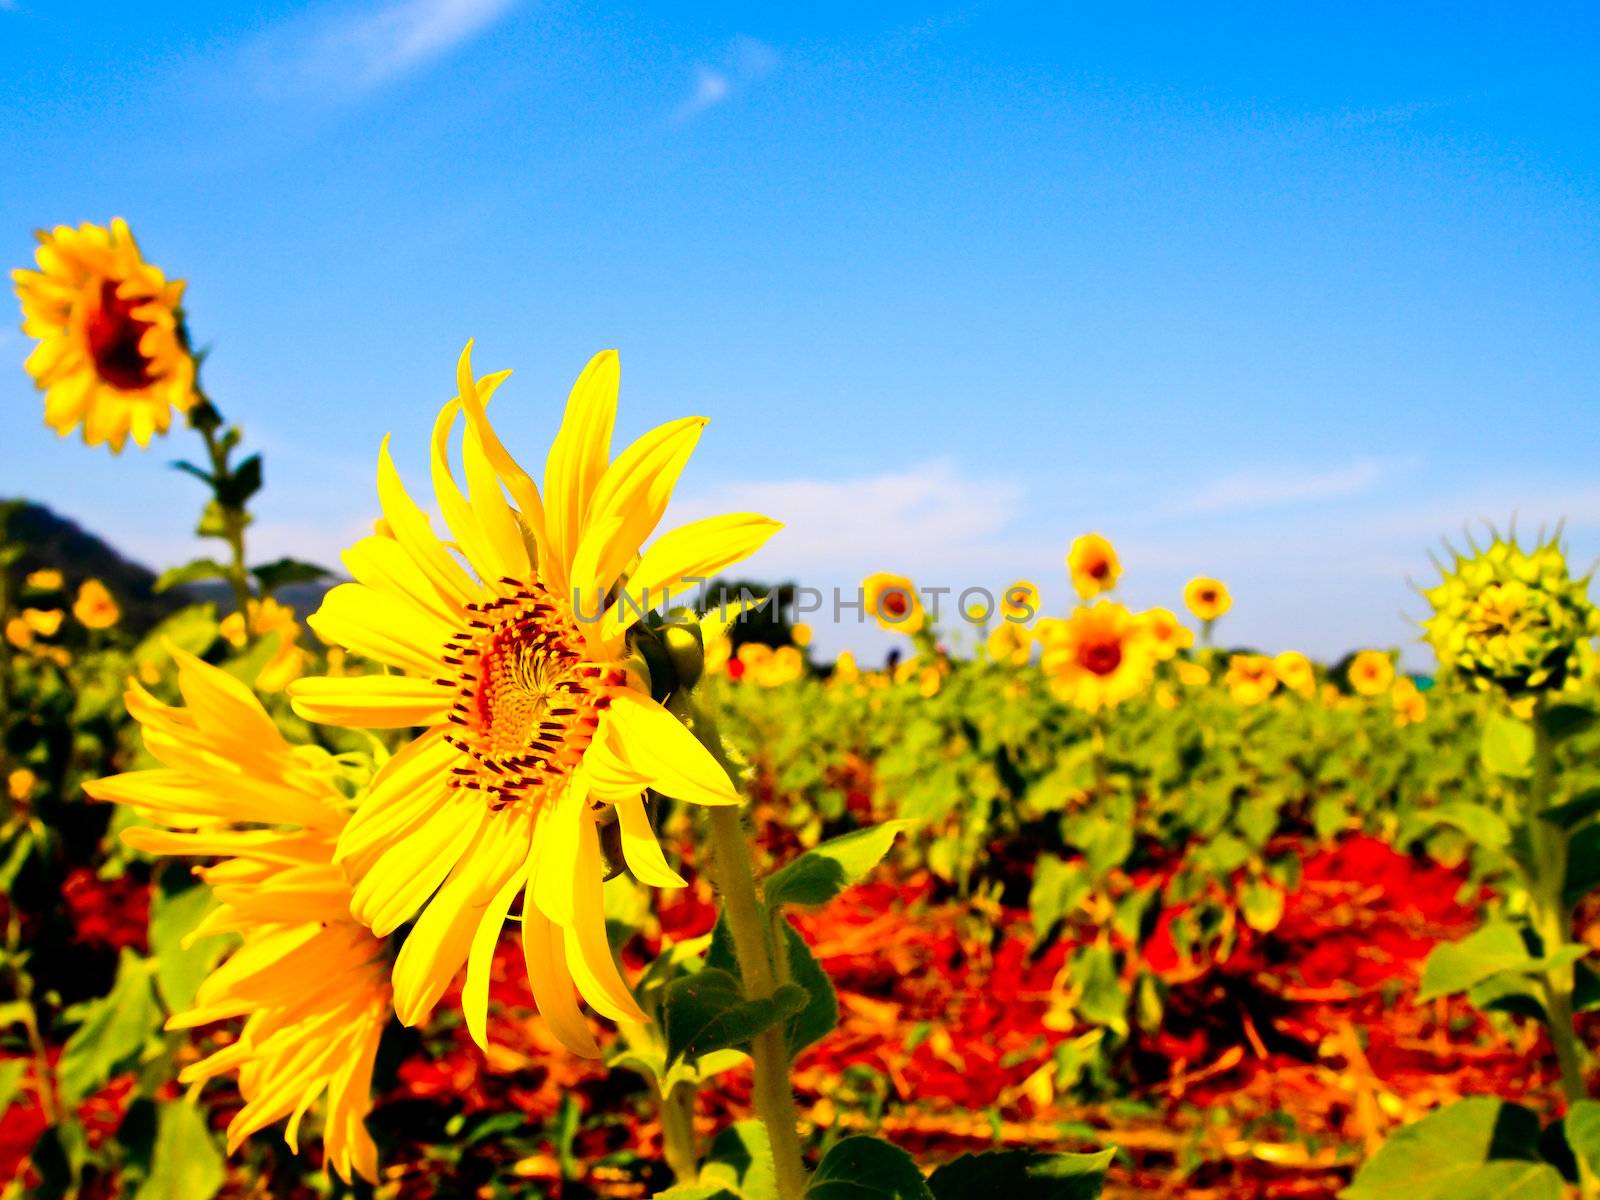 Sunflower garden by gjeerawut